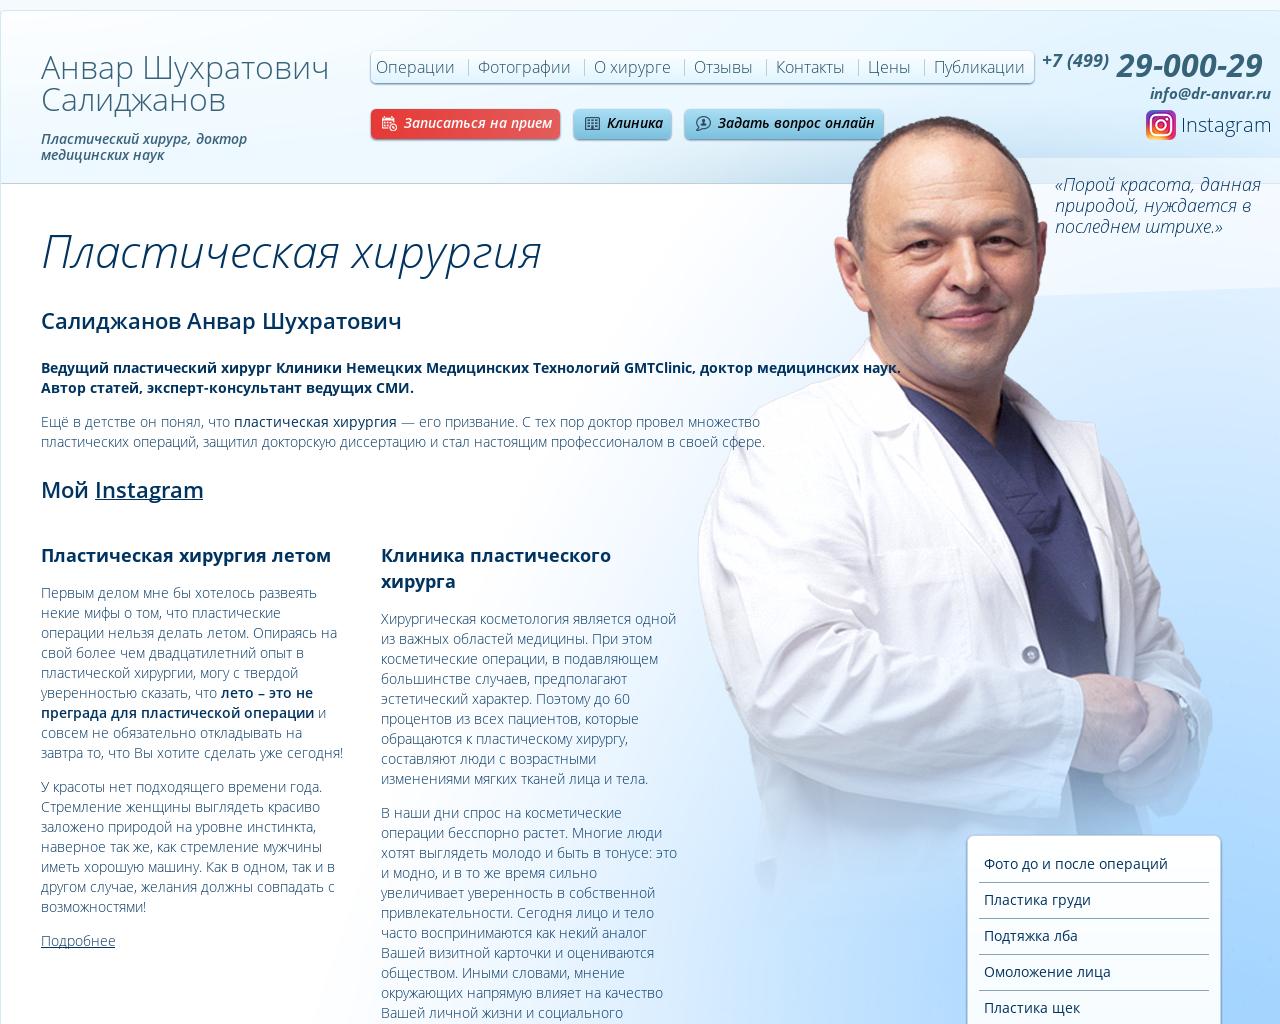 Изображение сайта dr-anvar.ru в разрешении 1280x1024